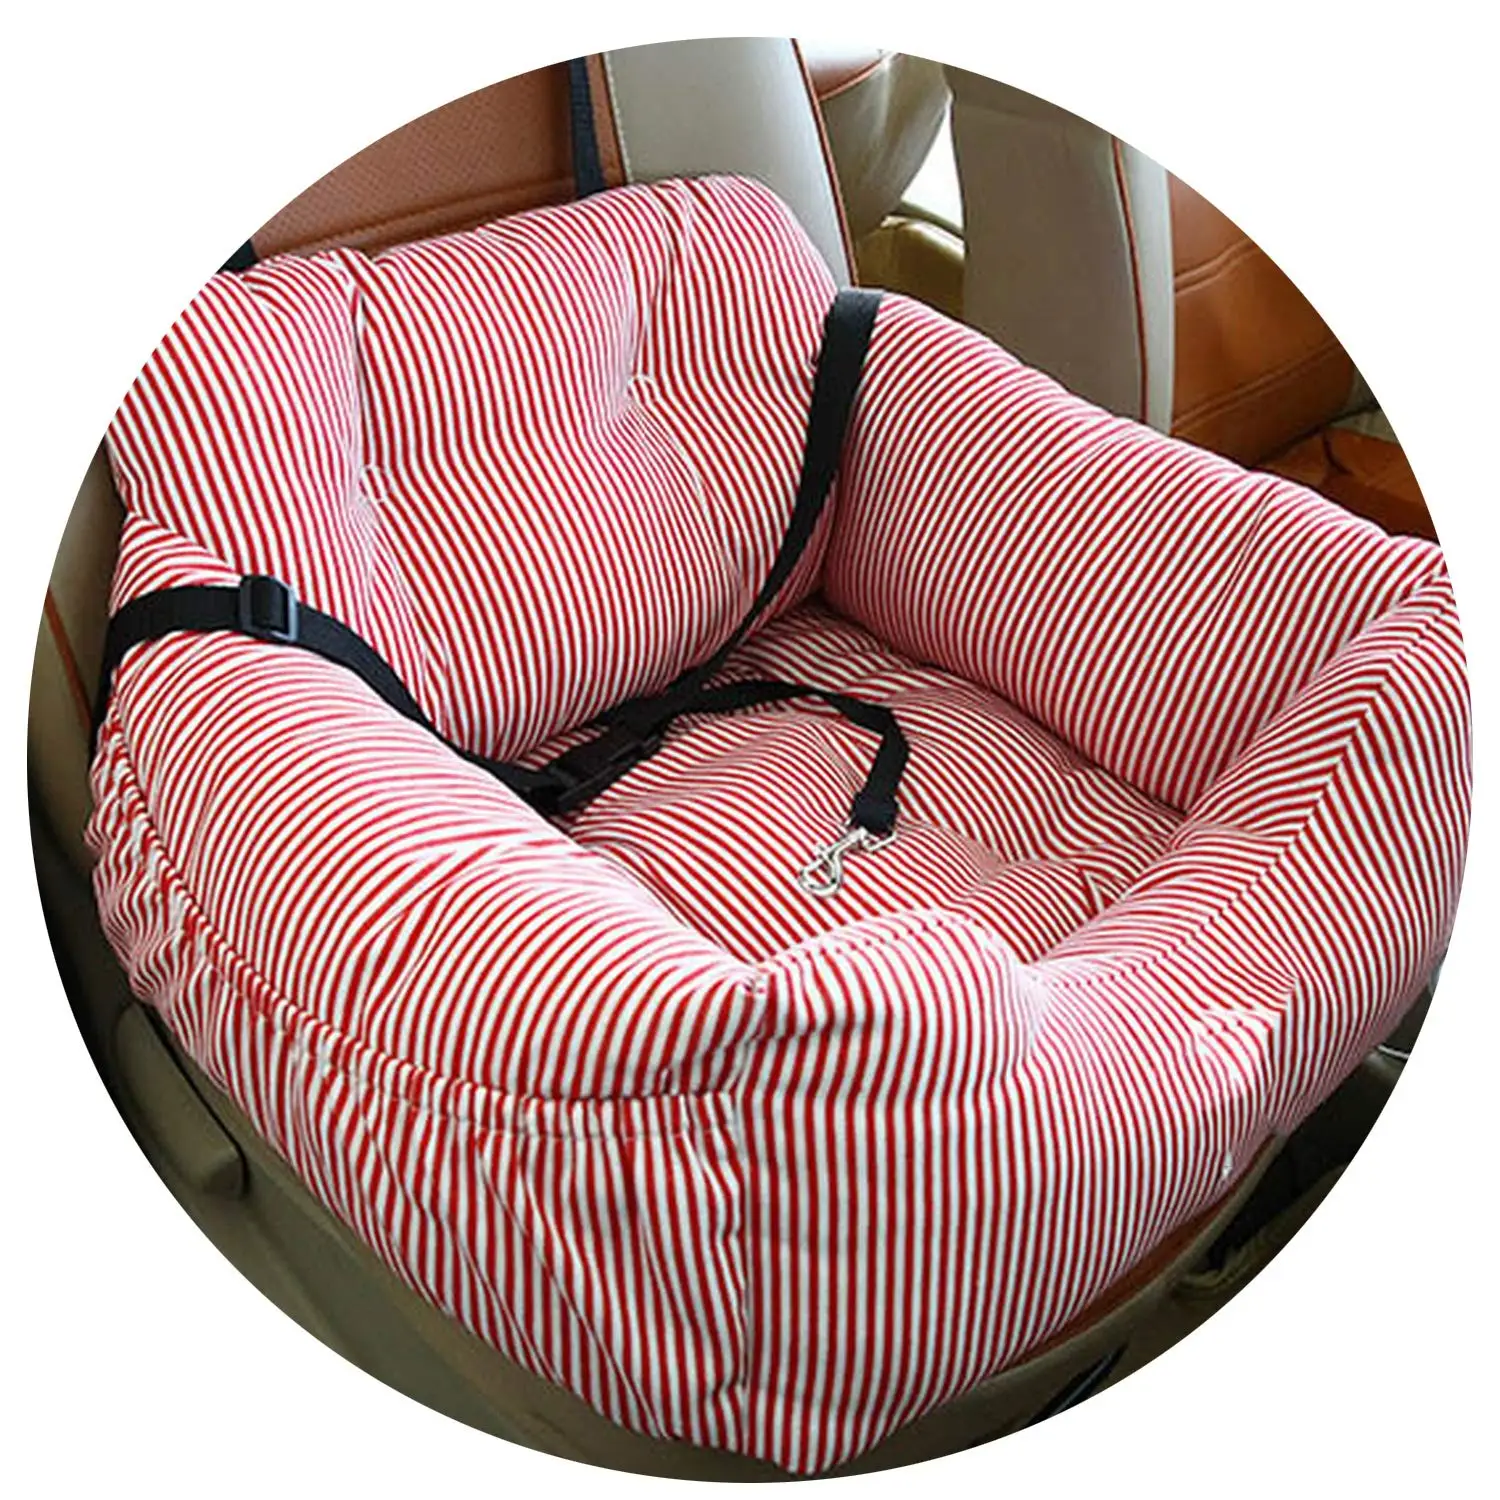 Pet безопасности сиденья удобные дышащие на открытом воздухе путешествия переноска для собак кровать коврик Одеяло Pet Автокресло сумка